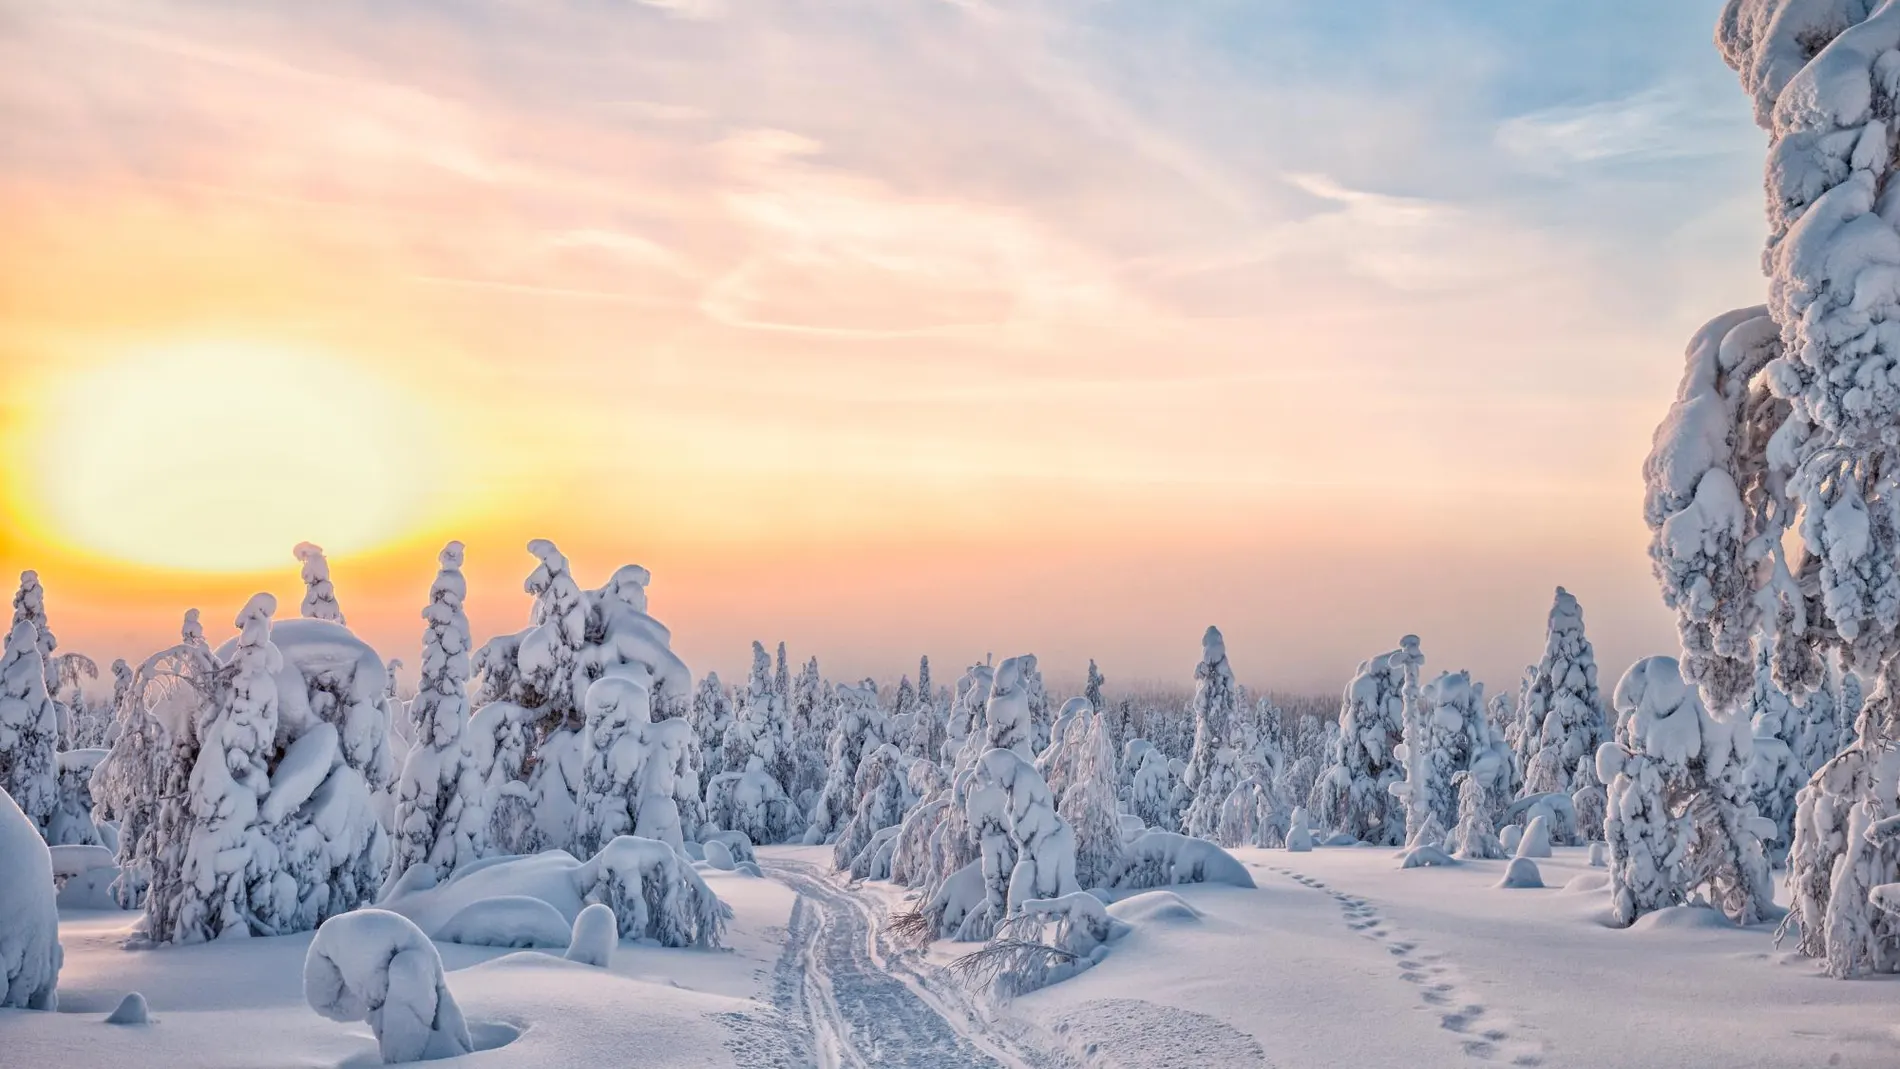 El invierno en Laponia es frío, pero oculta secretos maravillosos